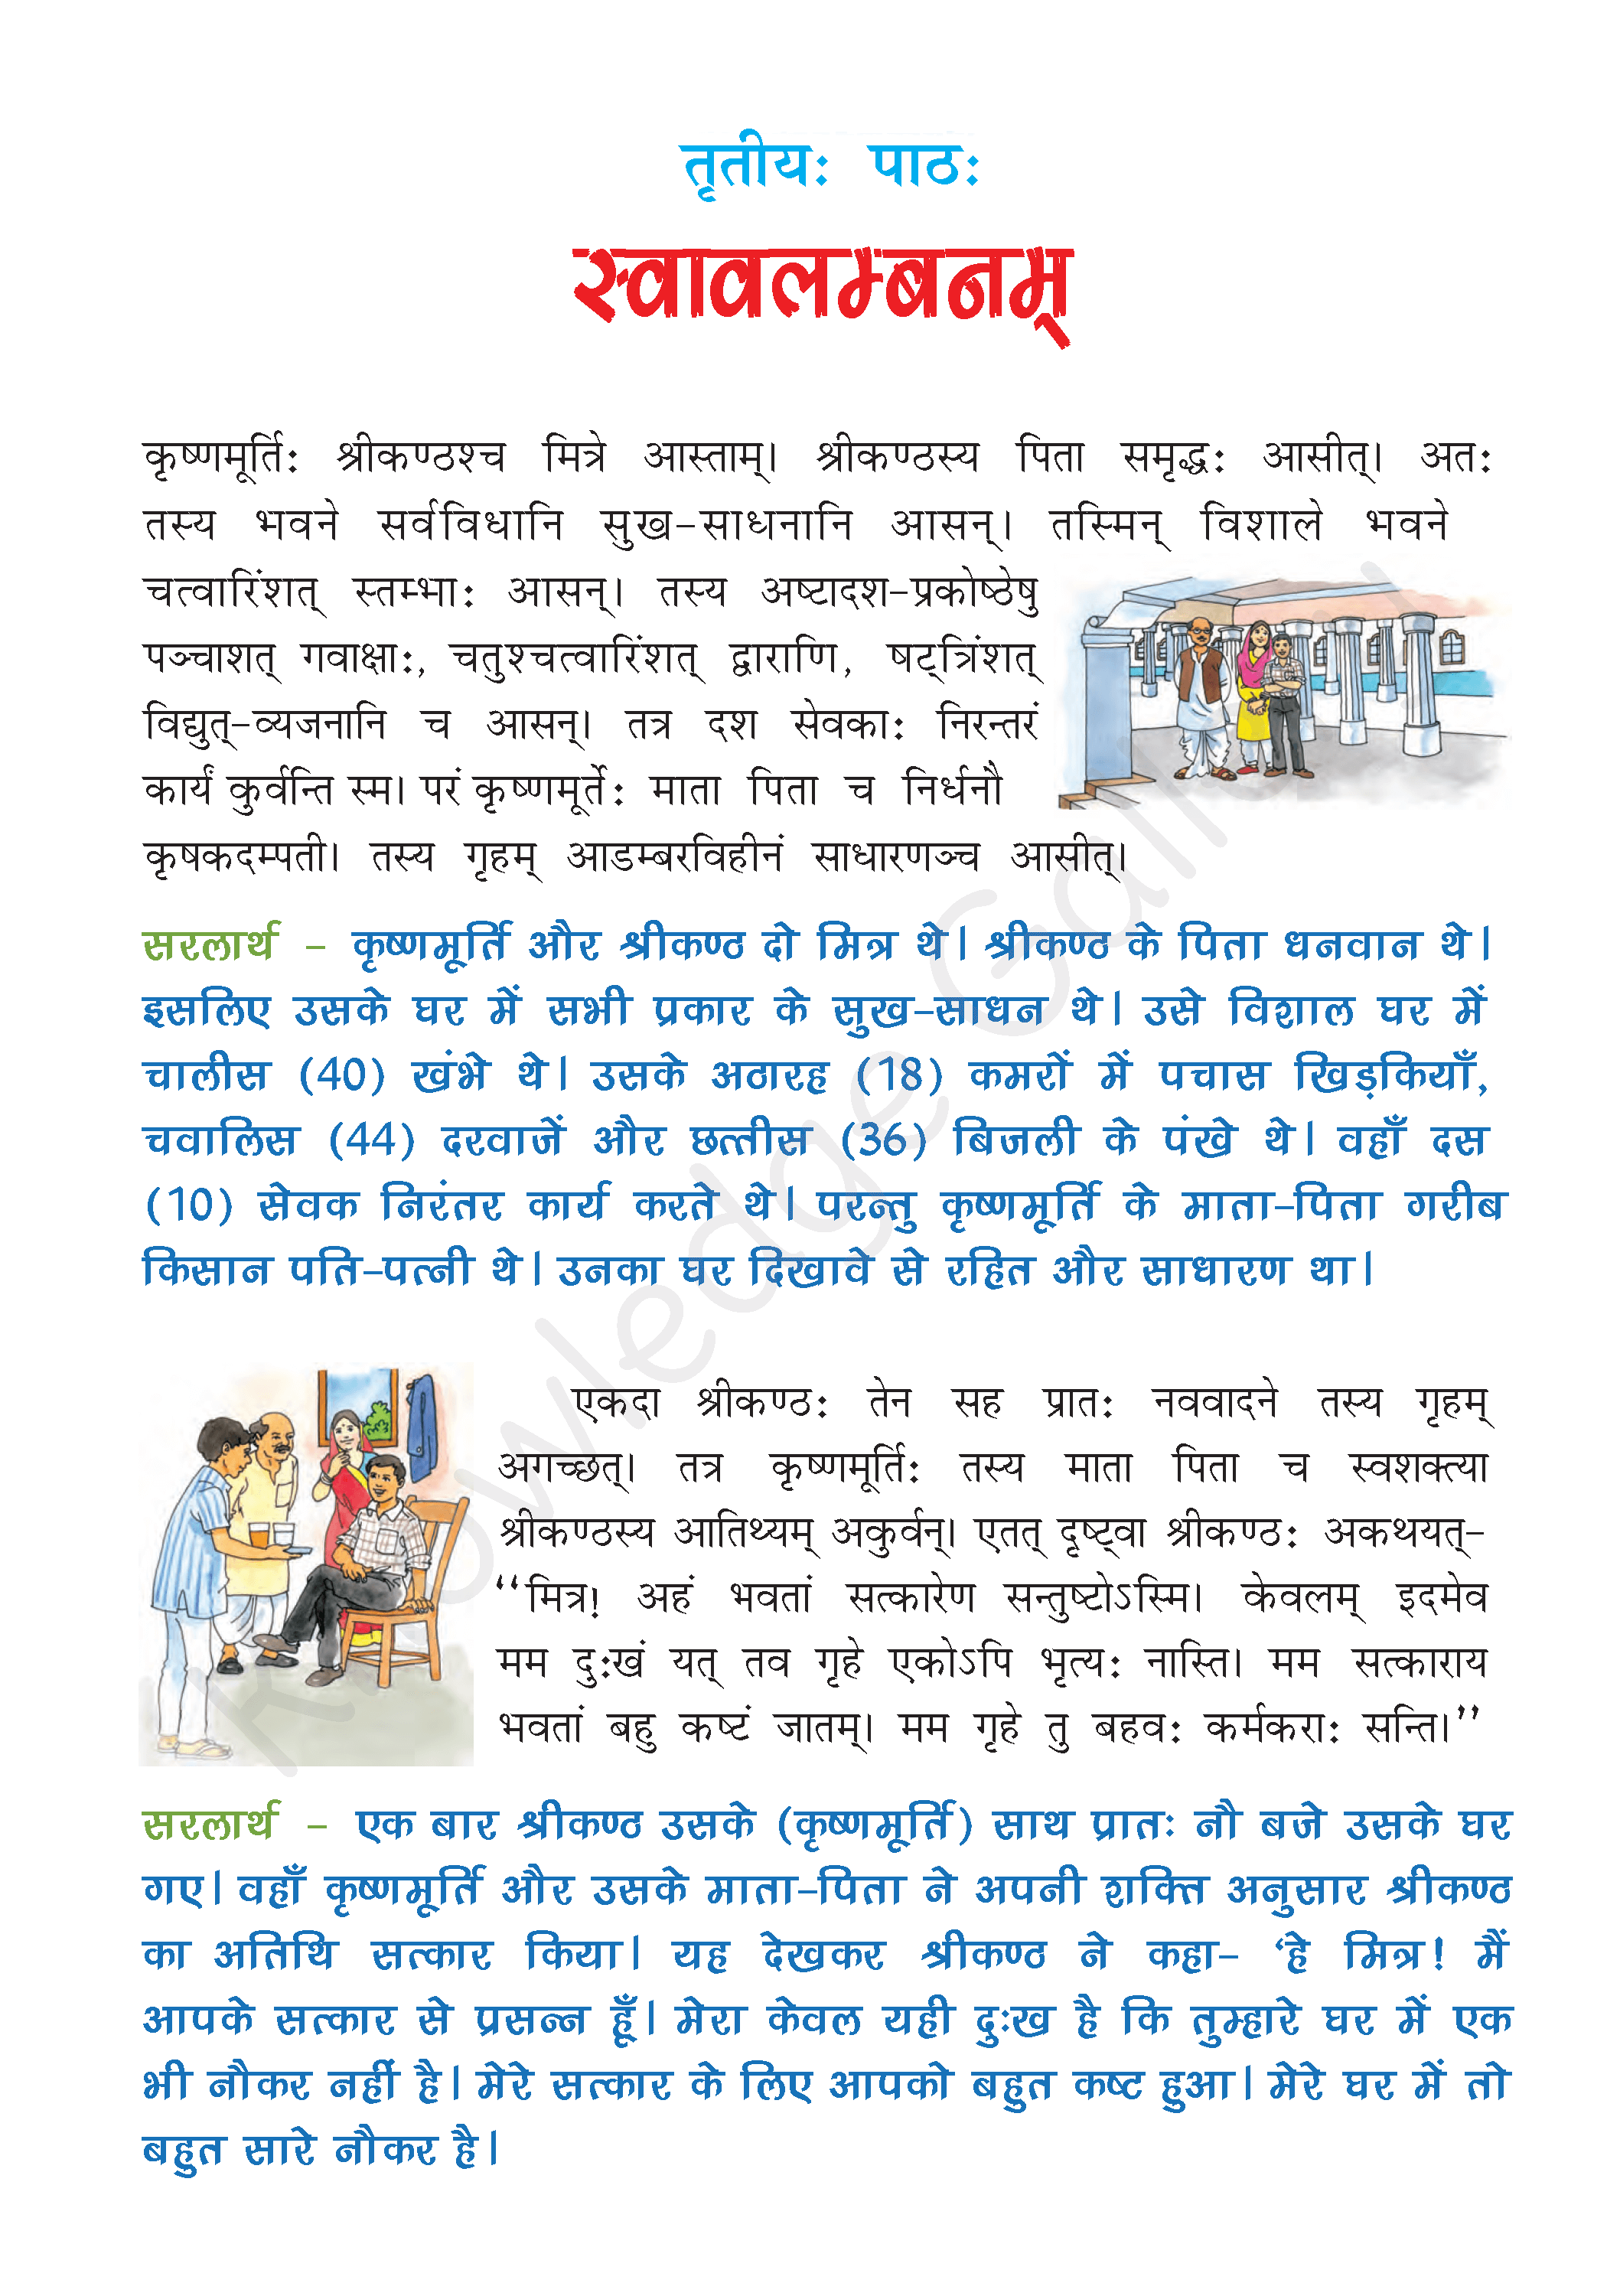 NCERT Solution For Class 7 Sanskrit Chapter 3 part 1